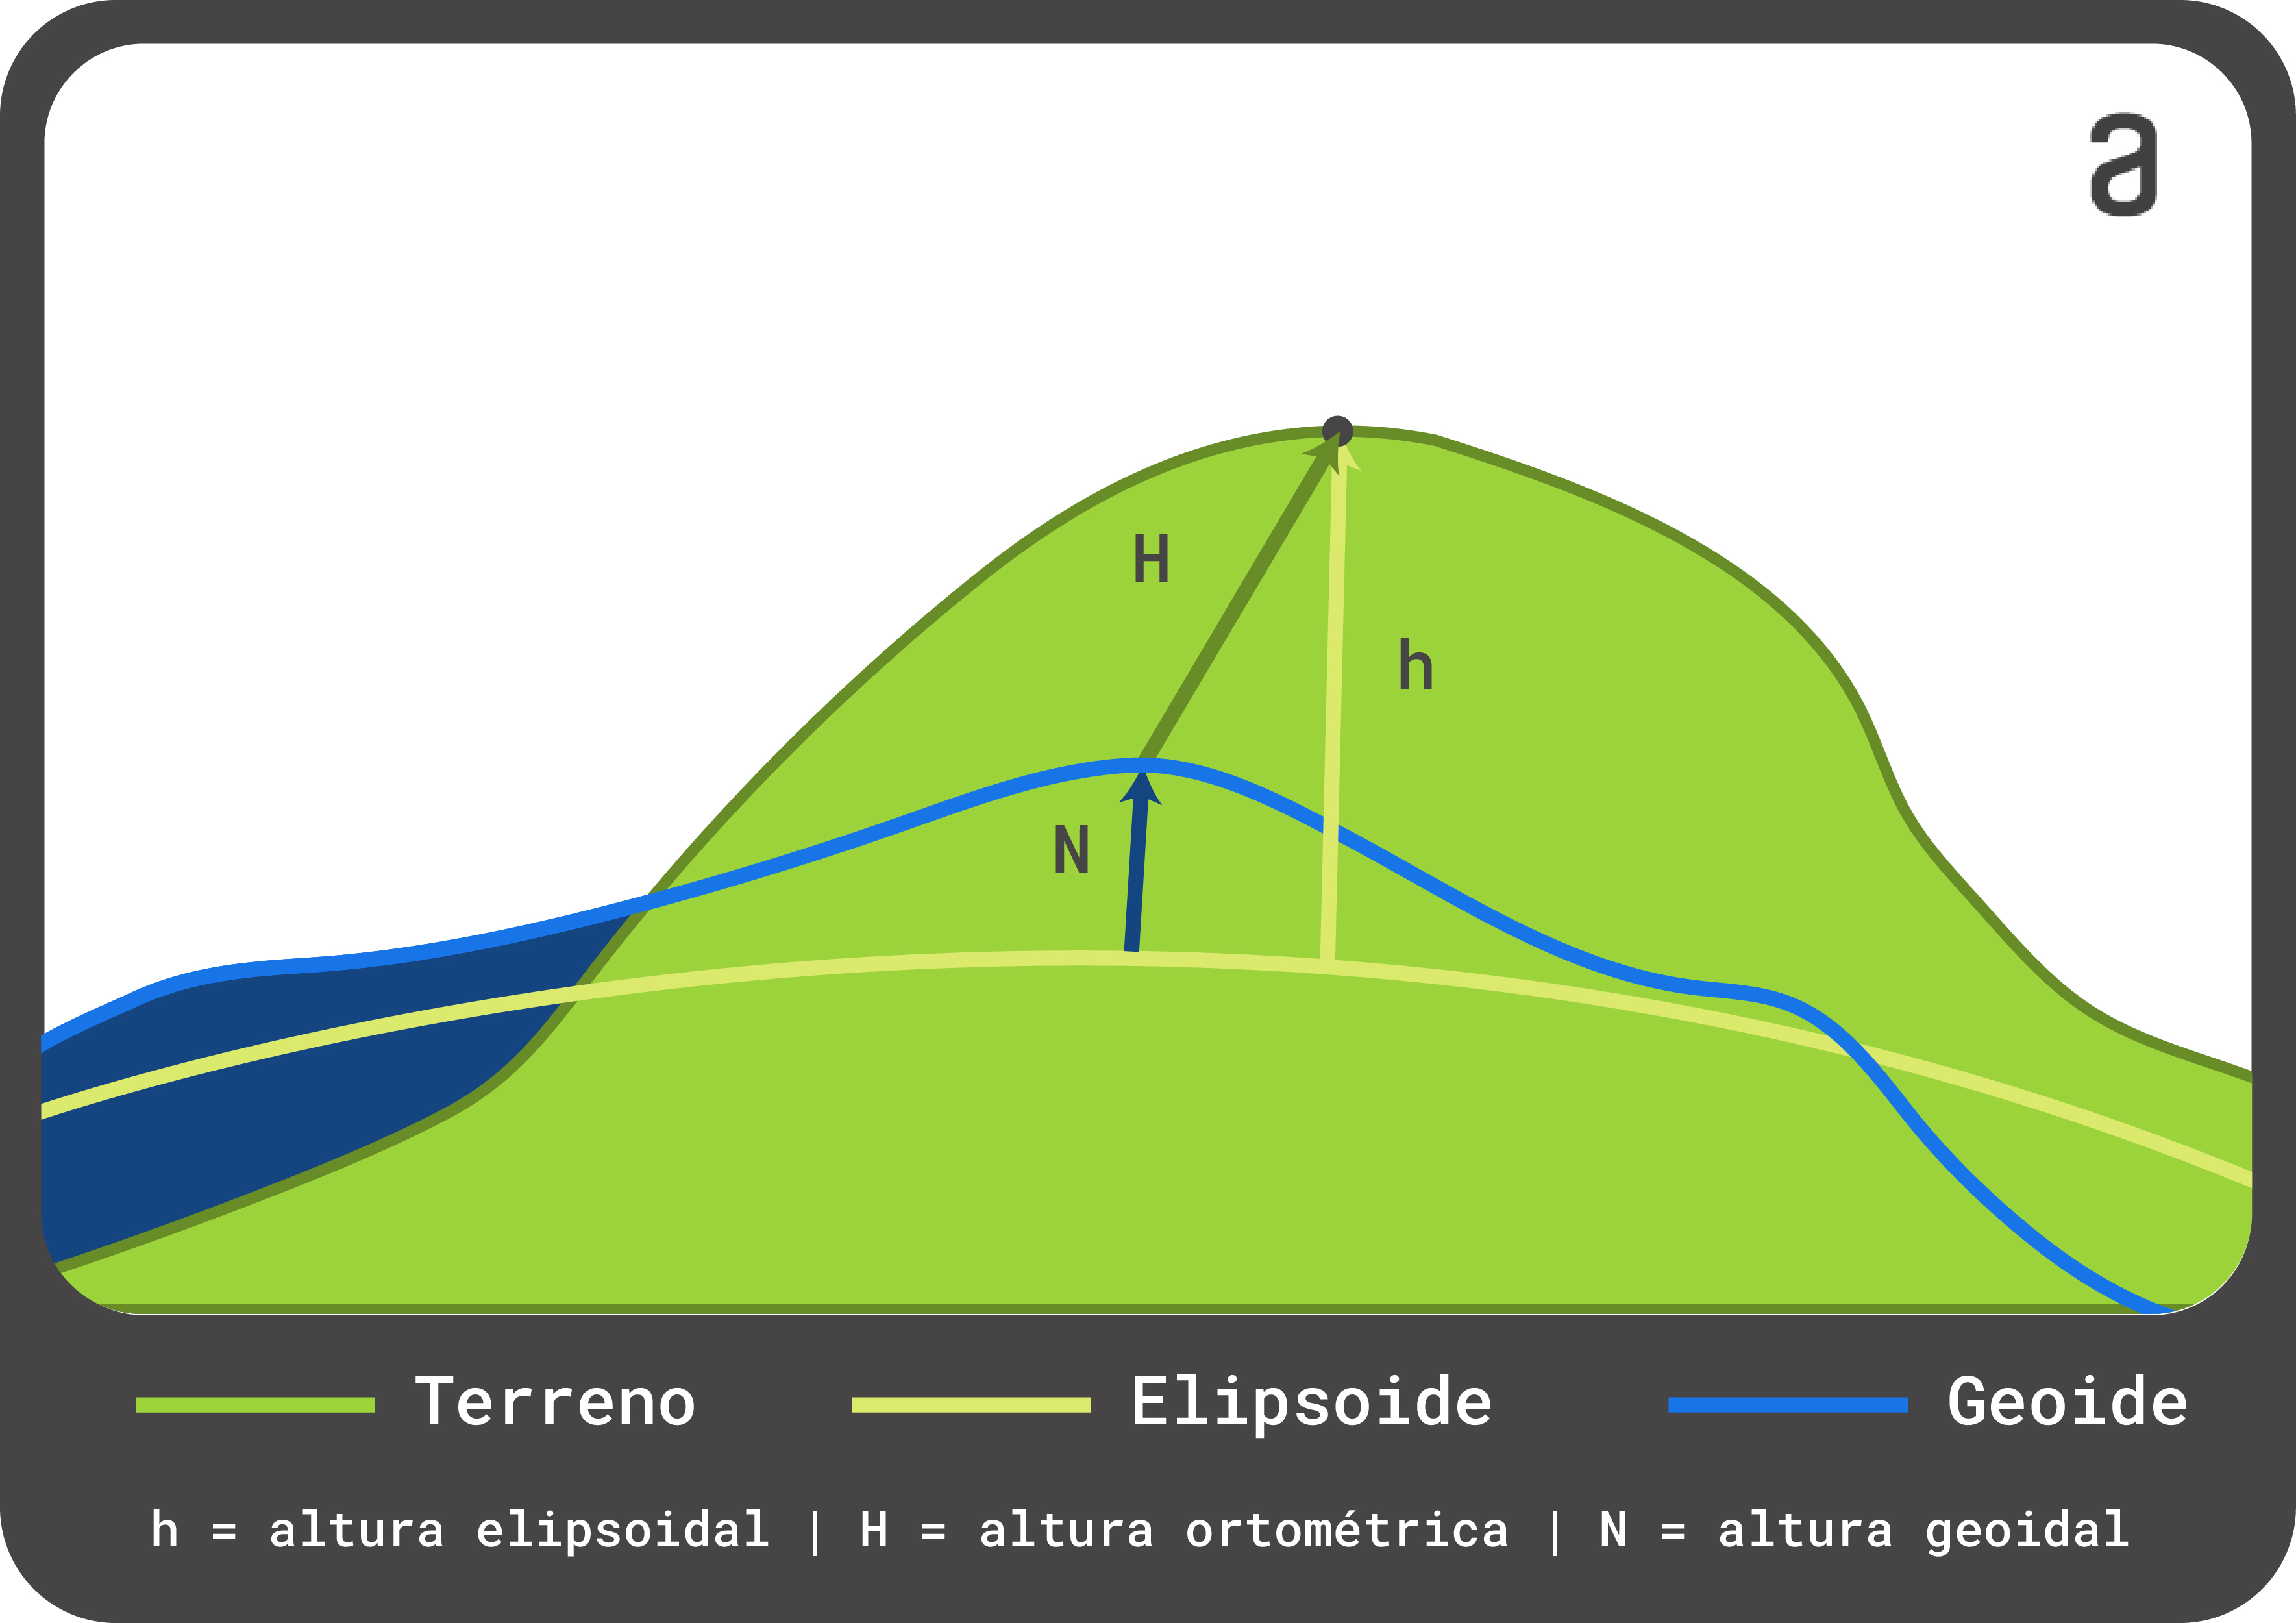 Ilustração mostrando como a altitude geométrica e ortométrica são calculadas. A geométrica é obtida a partir do elipsóide e a ortométrica a partir do geóide.